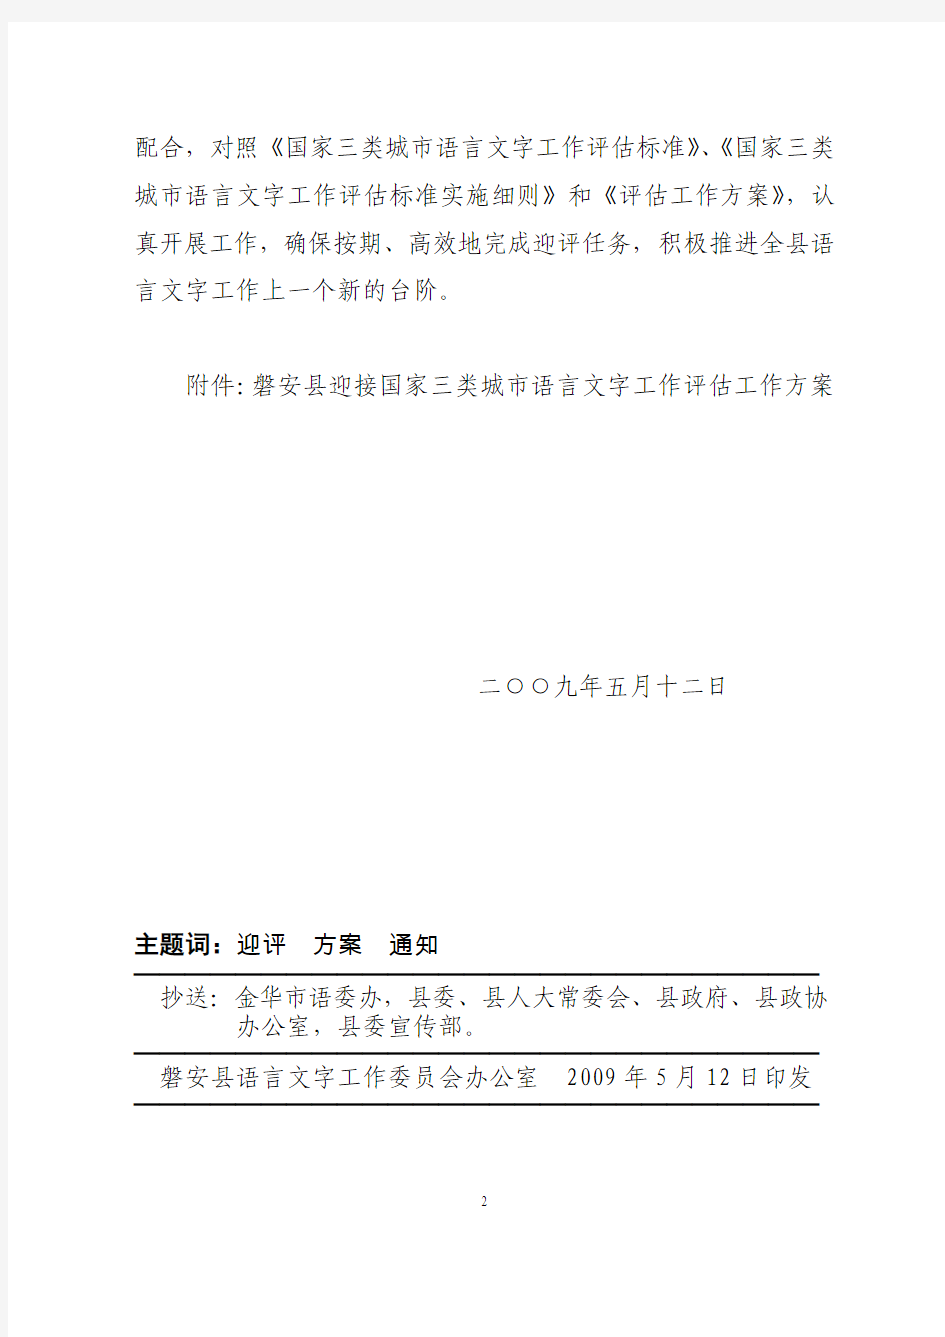 磐安县语言文字工作委员会文件